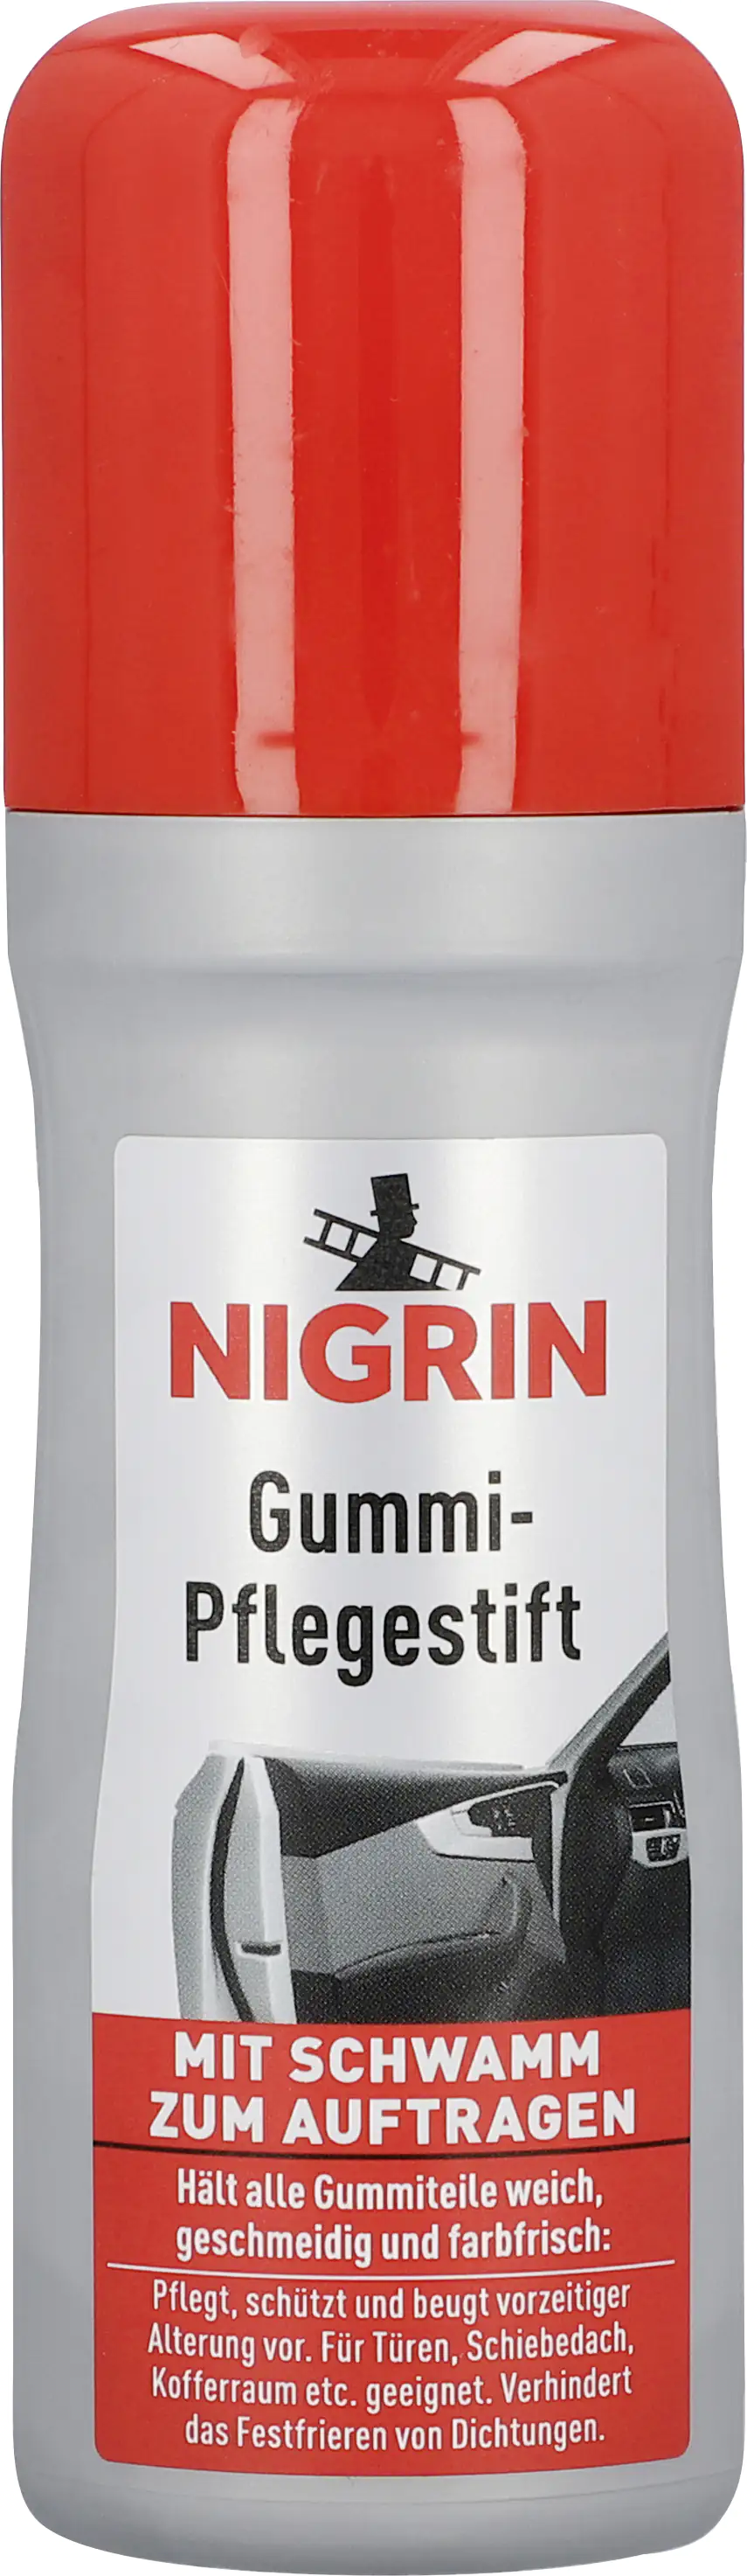 Nigrin Gummipflegestift 75ml kaufen